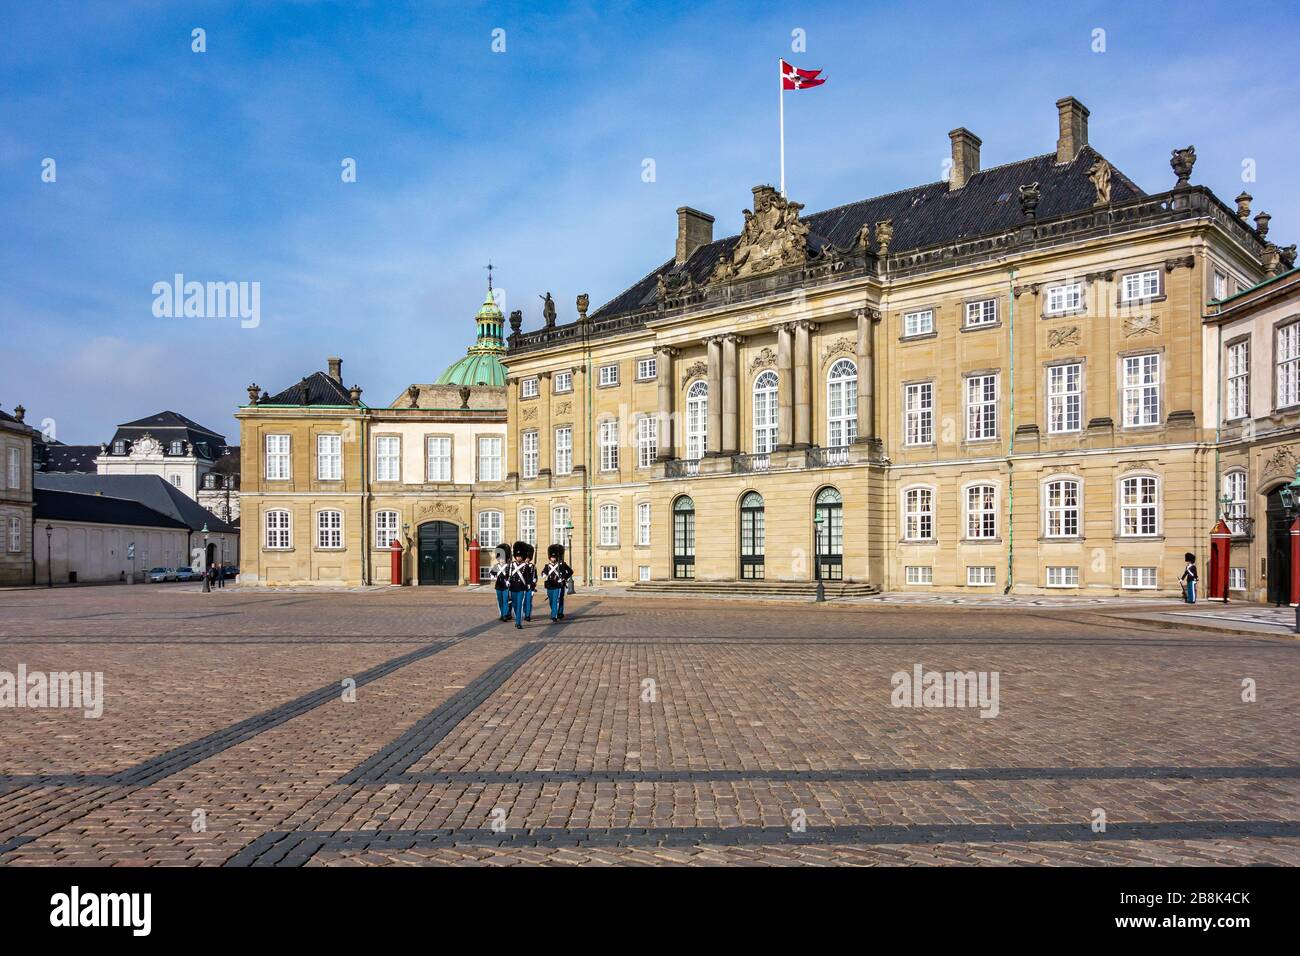 Changement de la garde à Amalienborg Slot (Château d'Amalienborg) Copenhague Danemark. Banque D'Images